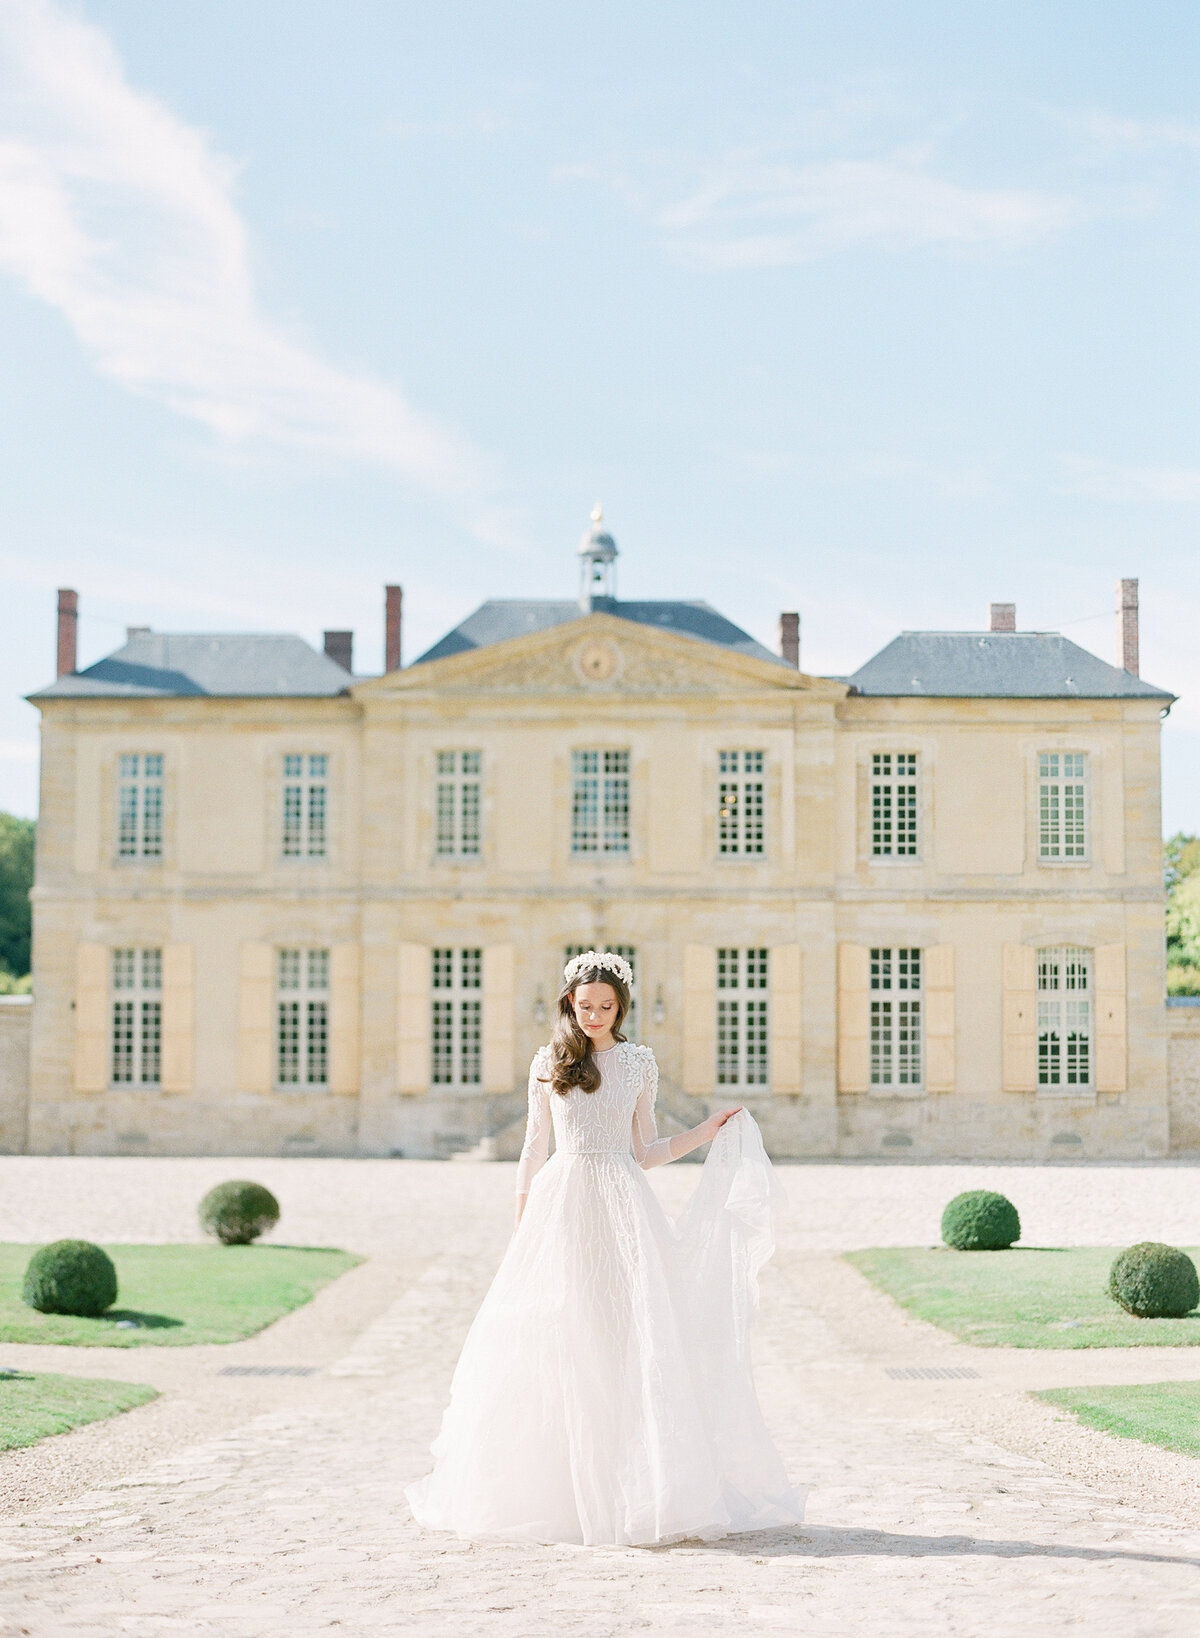 Château de Villette bride in France